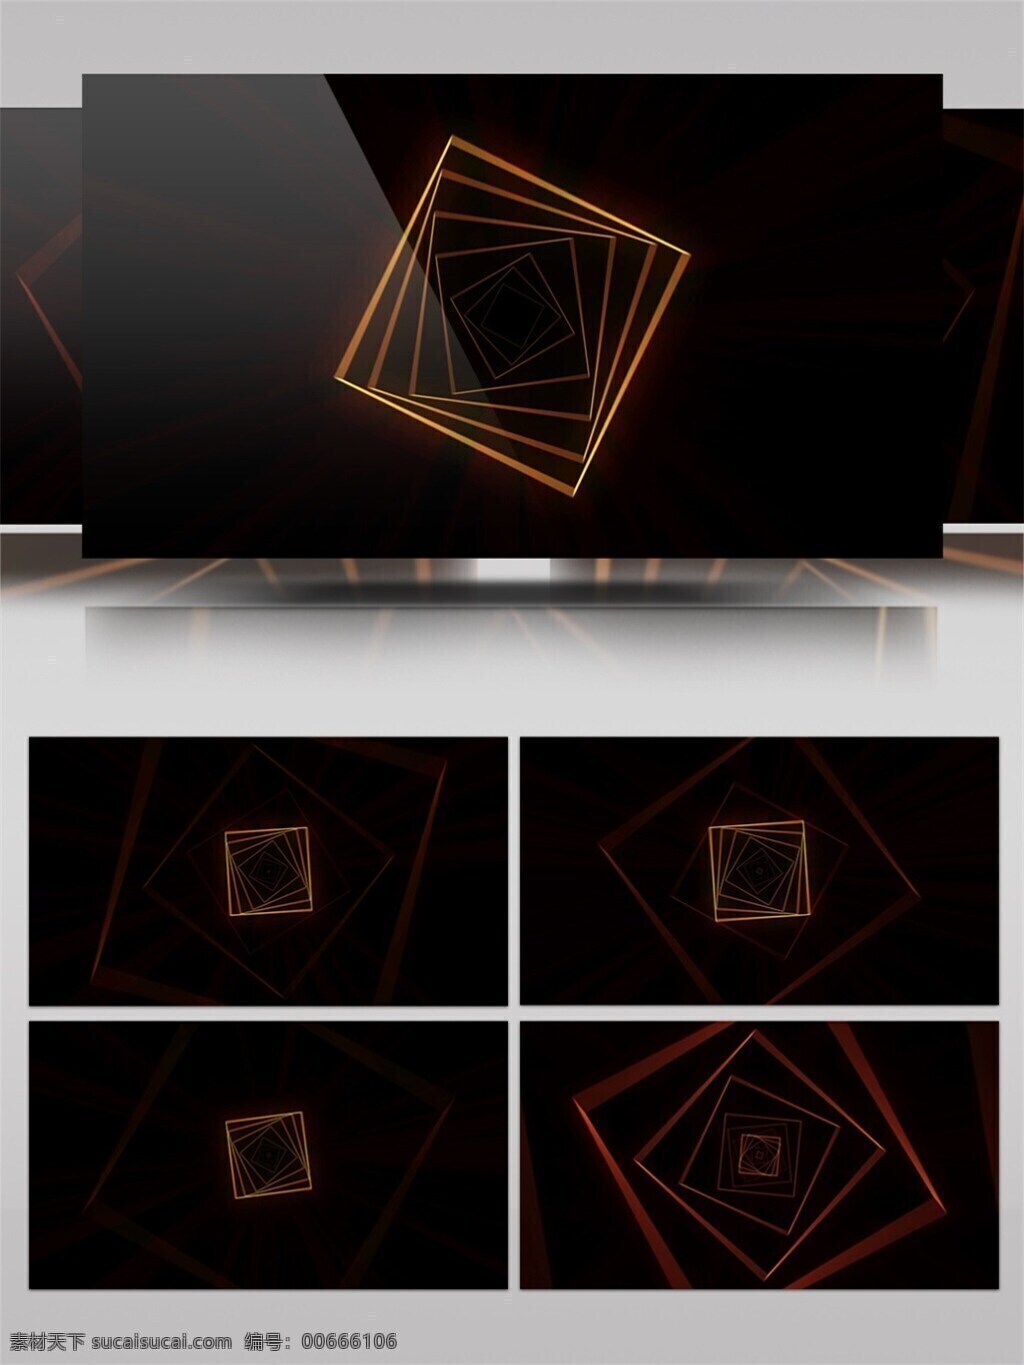 阶梯式 重叠 正方形 通道 视频 阶梯 边框 科技感 变形 视觉效果 视频素材 动态视频素材